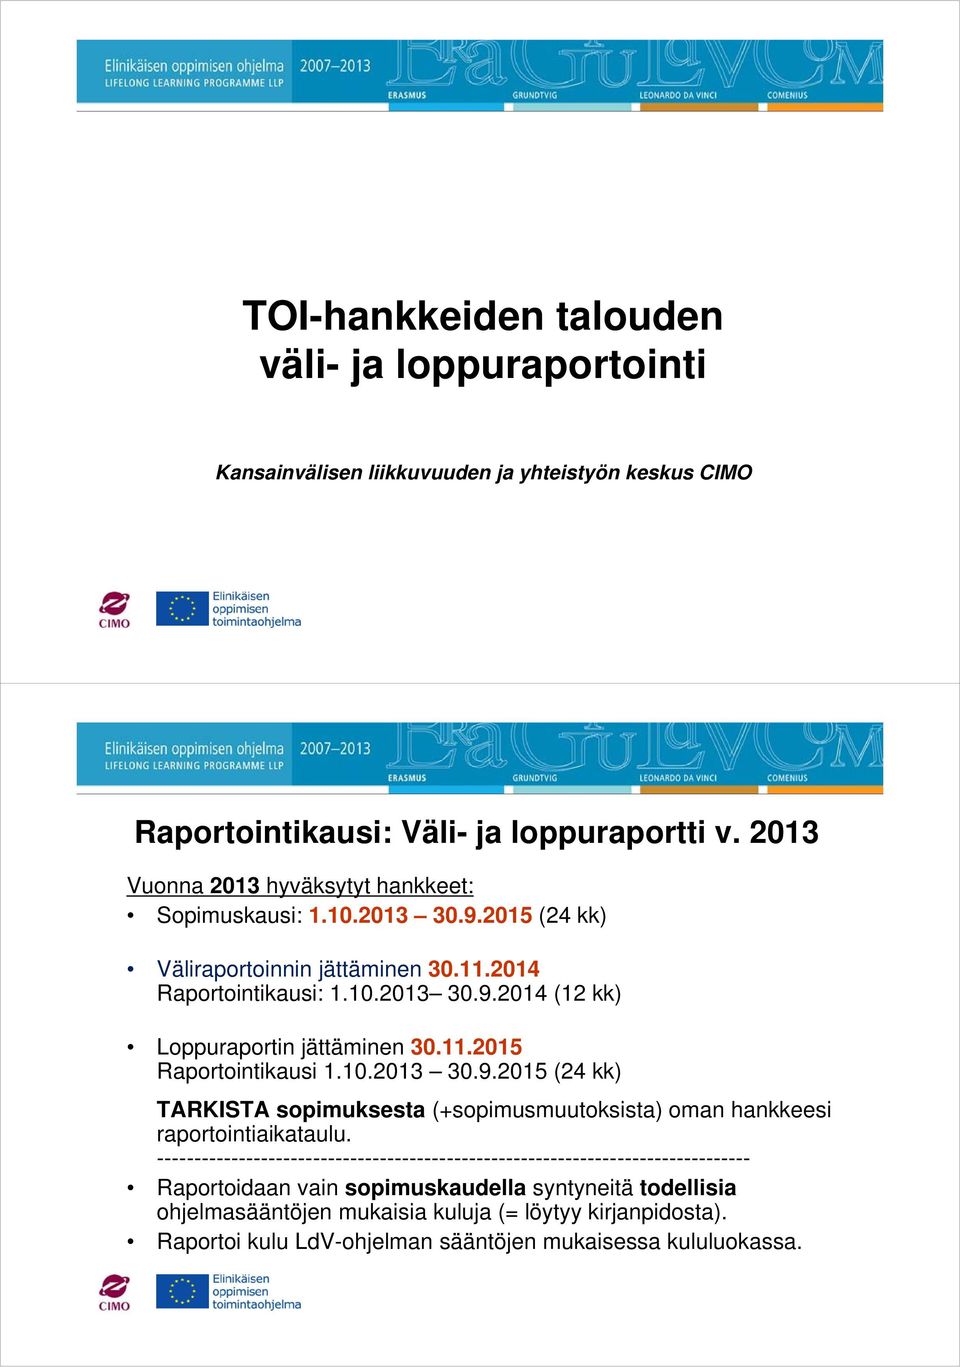 11.2015 Raportointikausi 1.10.2013 30.9.2015 (24 kk) TARKISTA sopimuksesta (+sopimusmuutoksista) oman hankkeesi raportointiaikataulu.